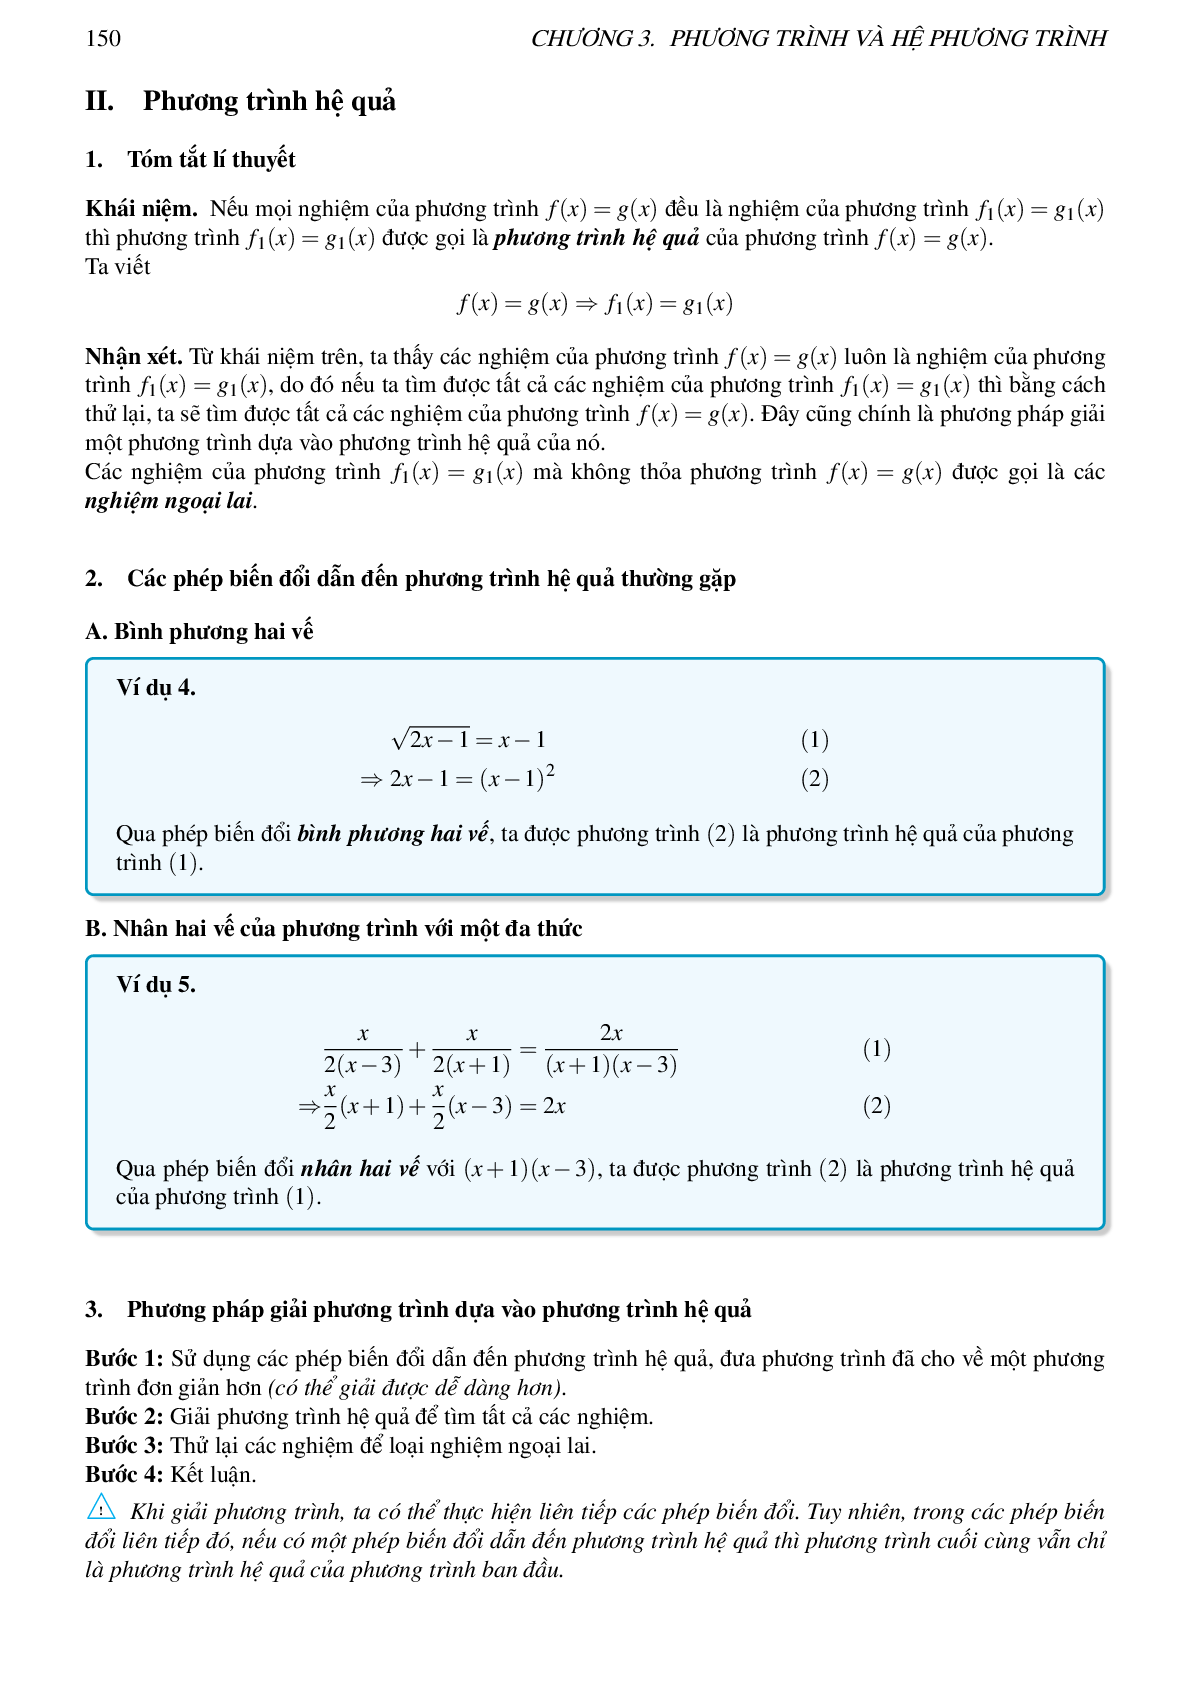 Ôn tập Chương 3: Phương trình và hệ phương trình môn toán lớp 10 (trang 6)